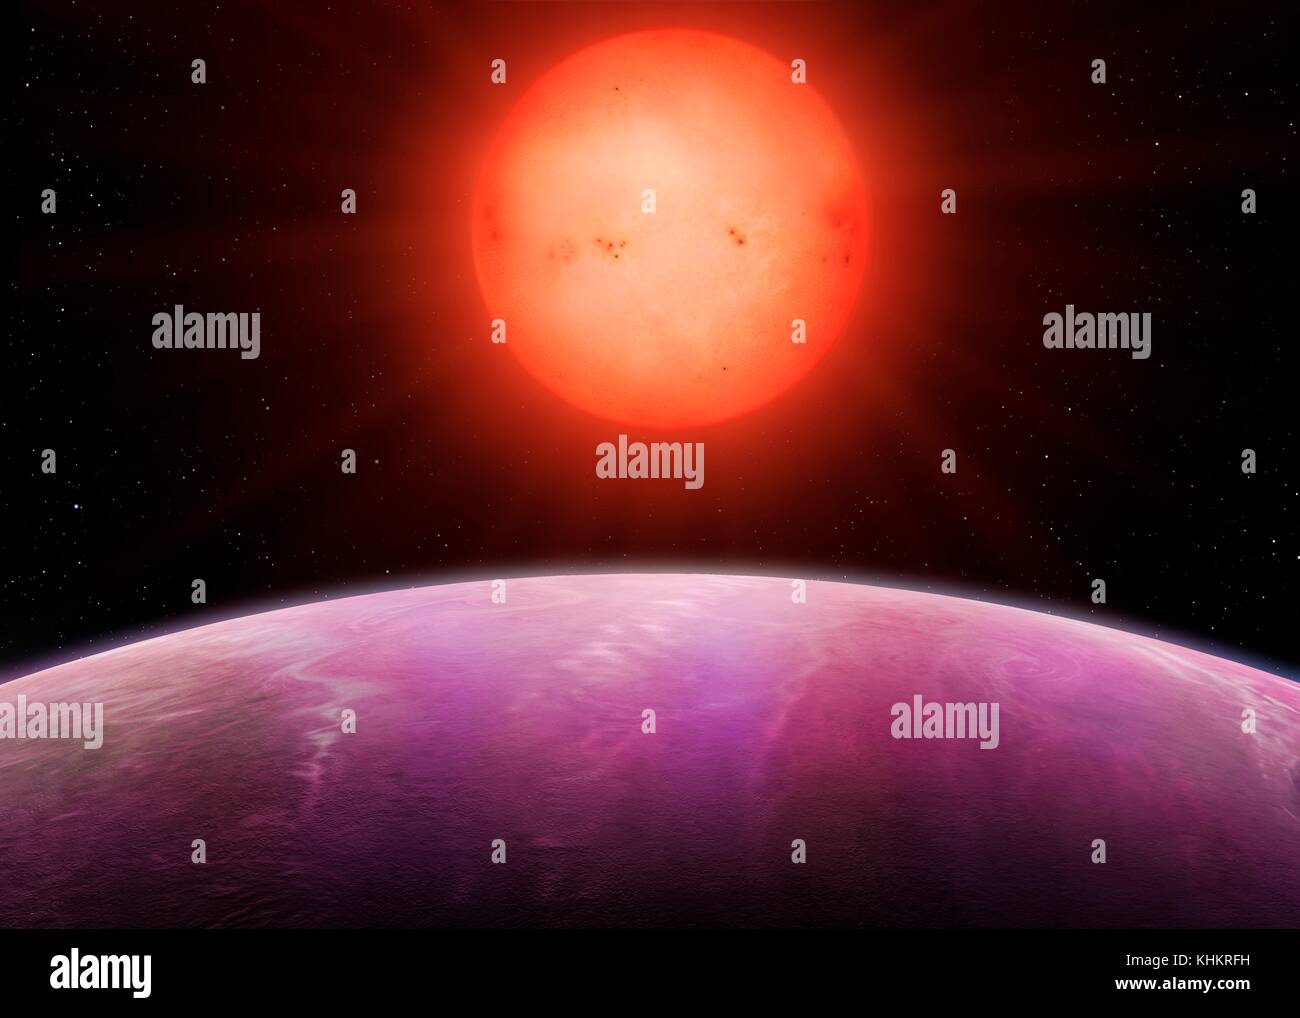 Red Dwarf NGTS-1 e il proprio gas pianeta gigante, illustrazione. NGTS (Transito di nuova generazione di indagine) si trova nel deserto di Atacama nel Cile, con un obiettivo primario per individuare pianeti extrasolari con masse e dimensioni tra quelle della terra e Nettuno. Una delle scoperte è NGTS-1, un red dwarf star circa la metà del diametro del sole è stato trovato per ospitare un pianeta quasi un quarto delle sue dimensioni, il che lo rende il più grande pianeta noti in relazione alla sua stella. Foto Stock